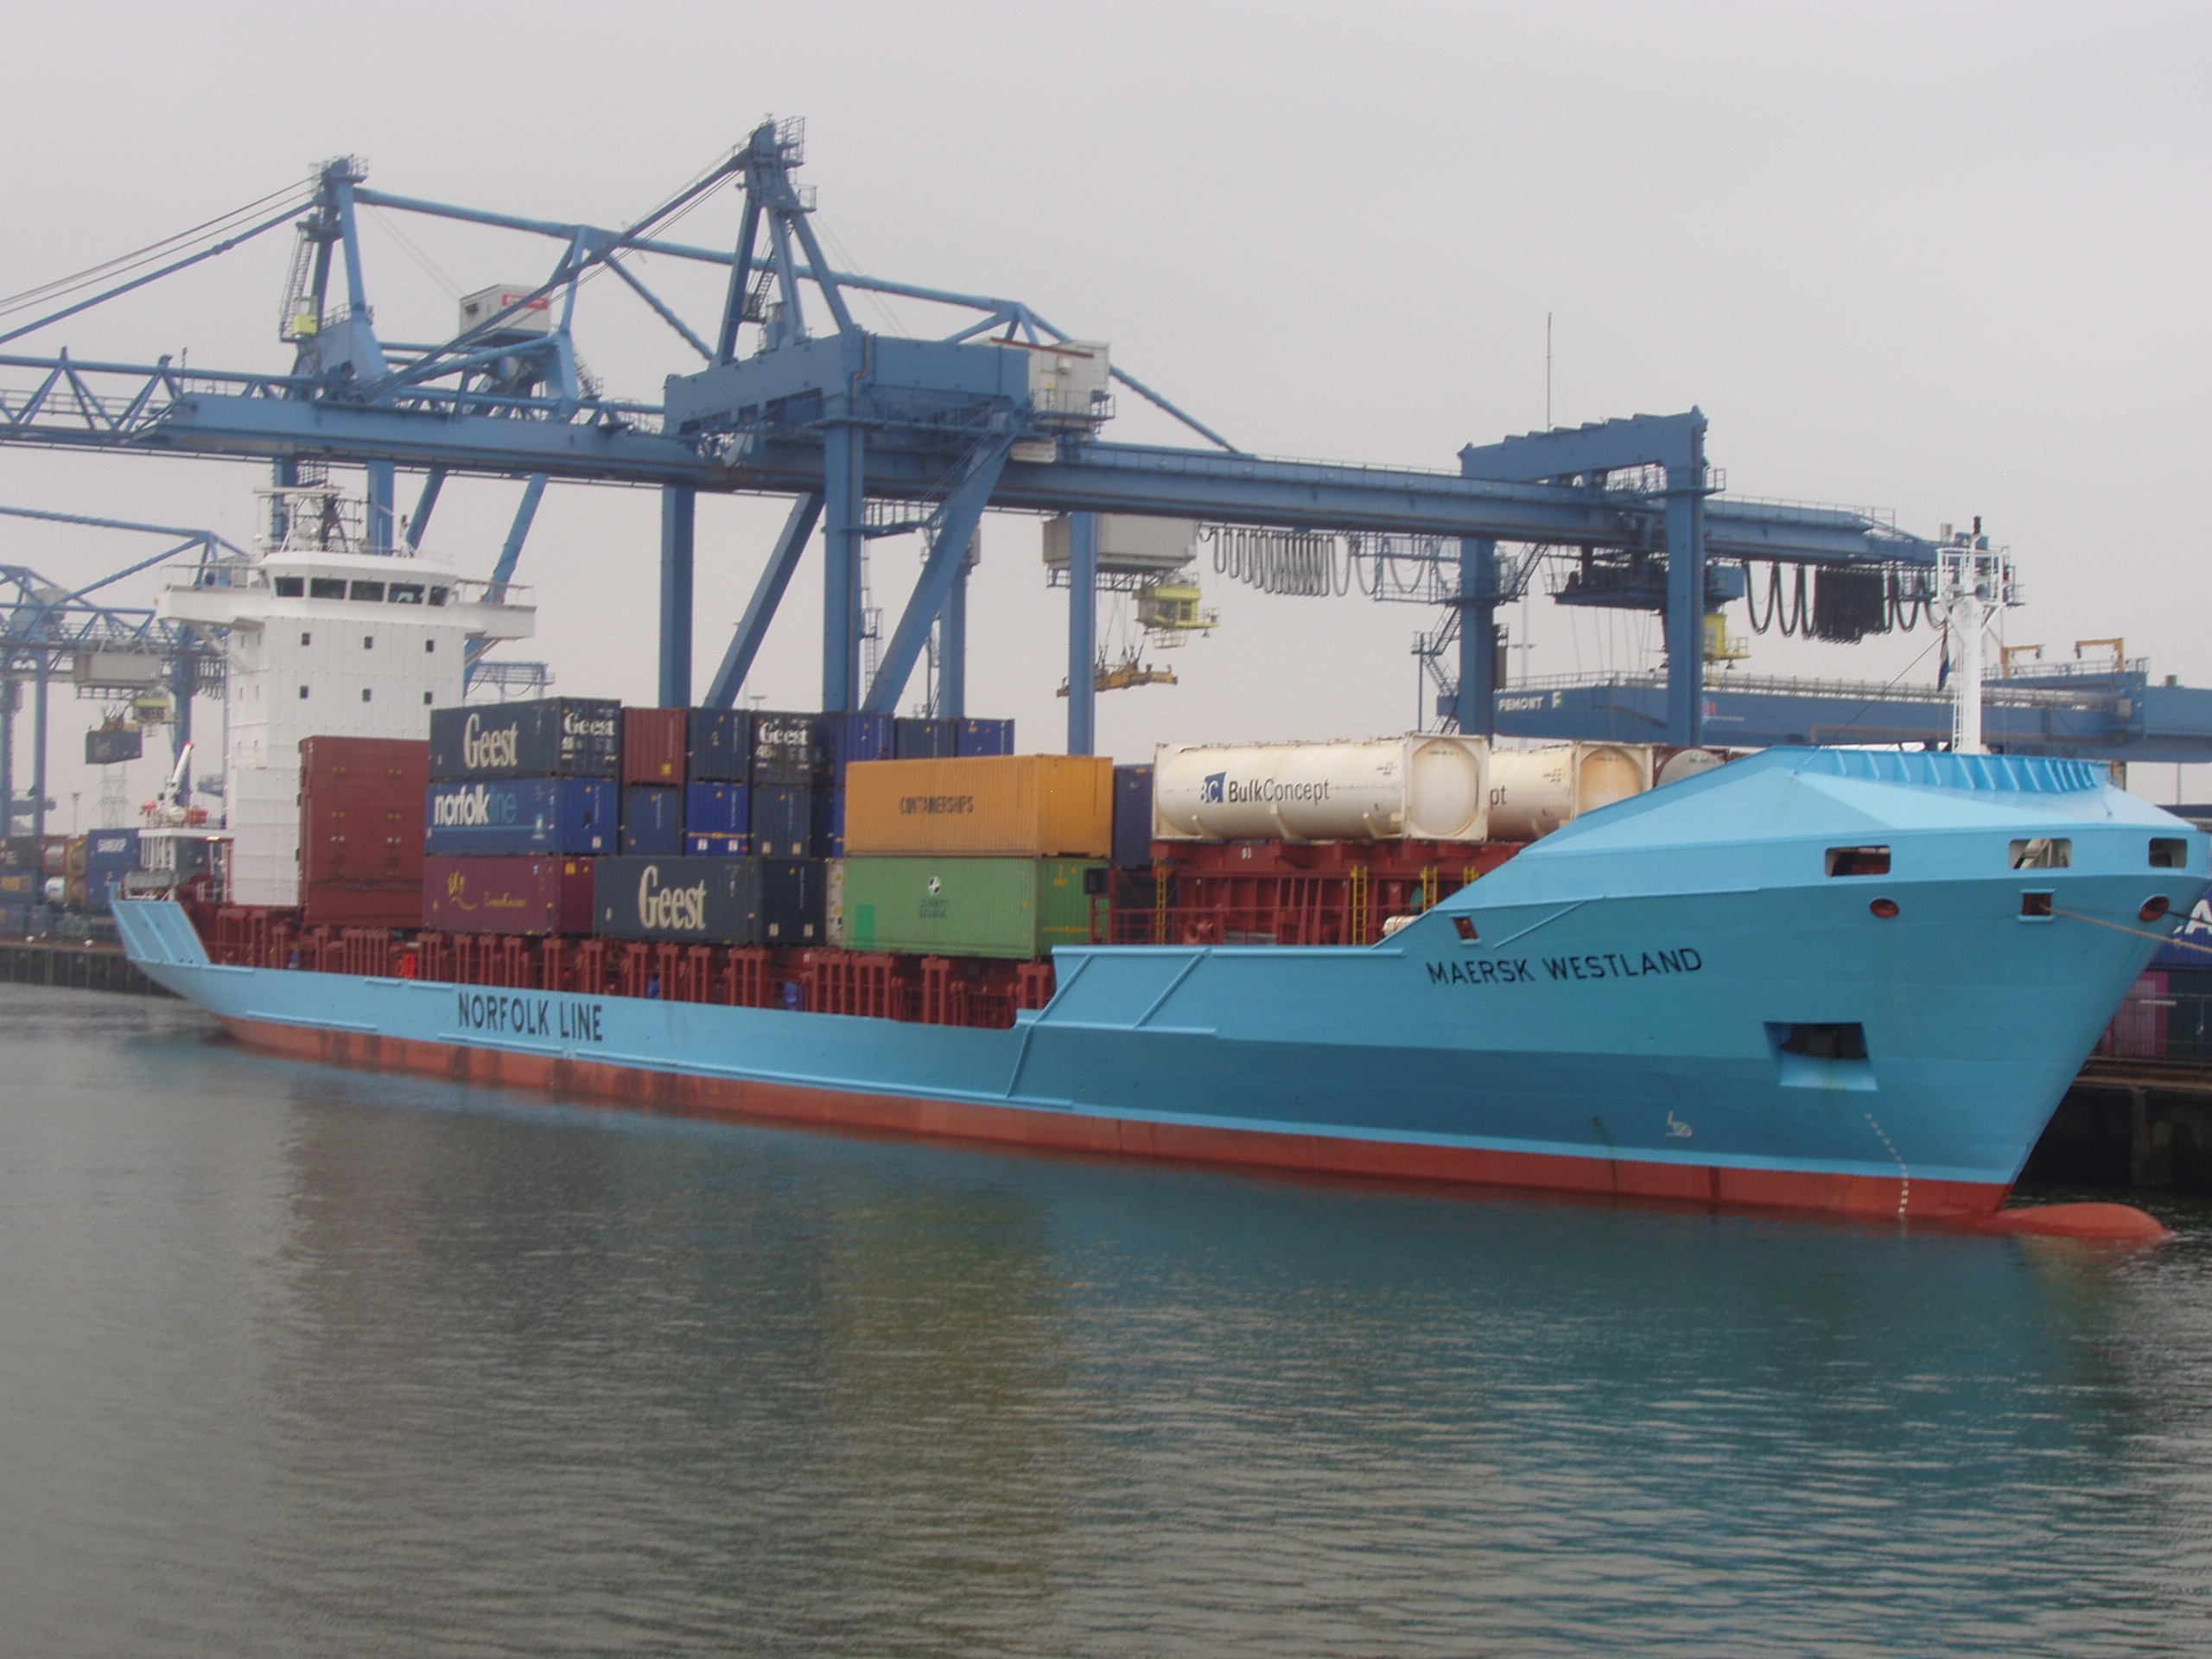 Maersk Westland